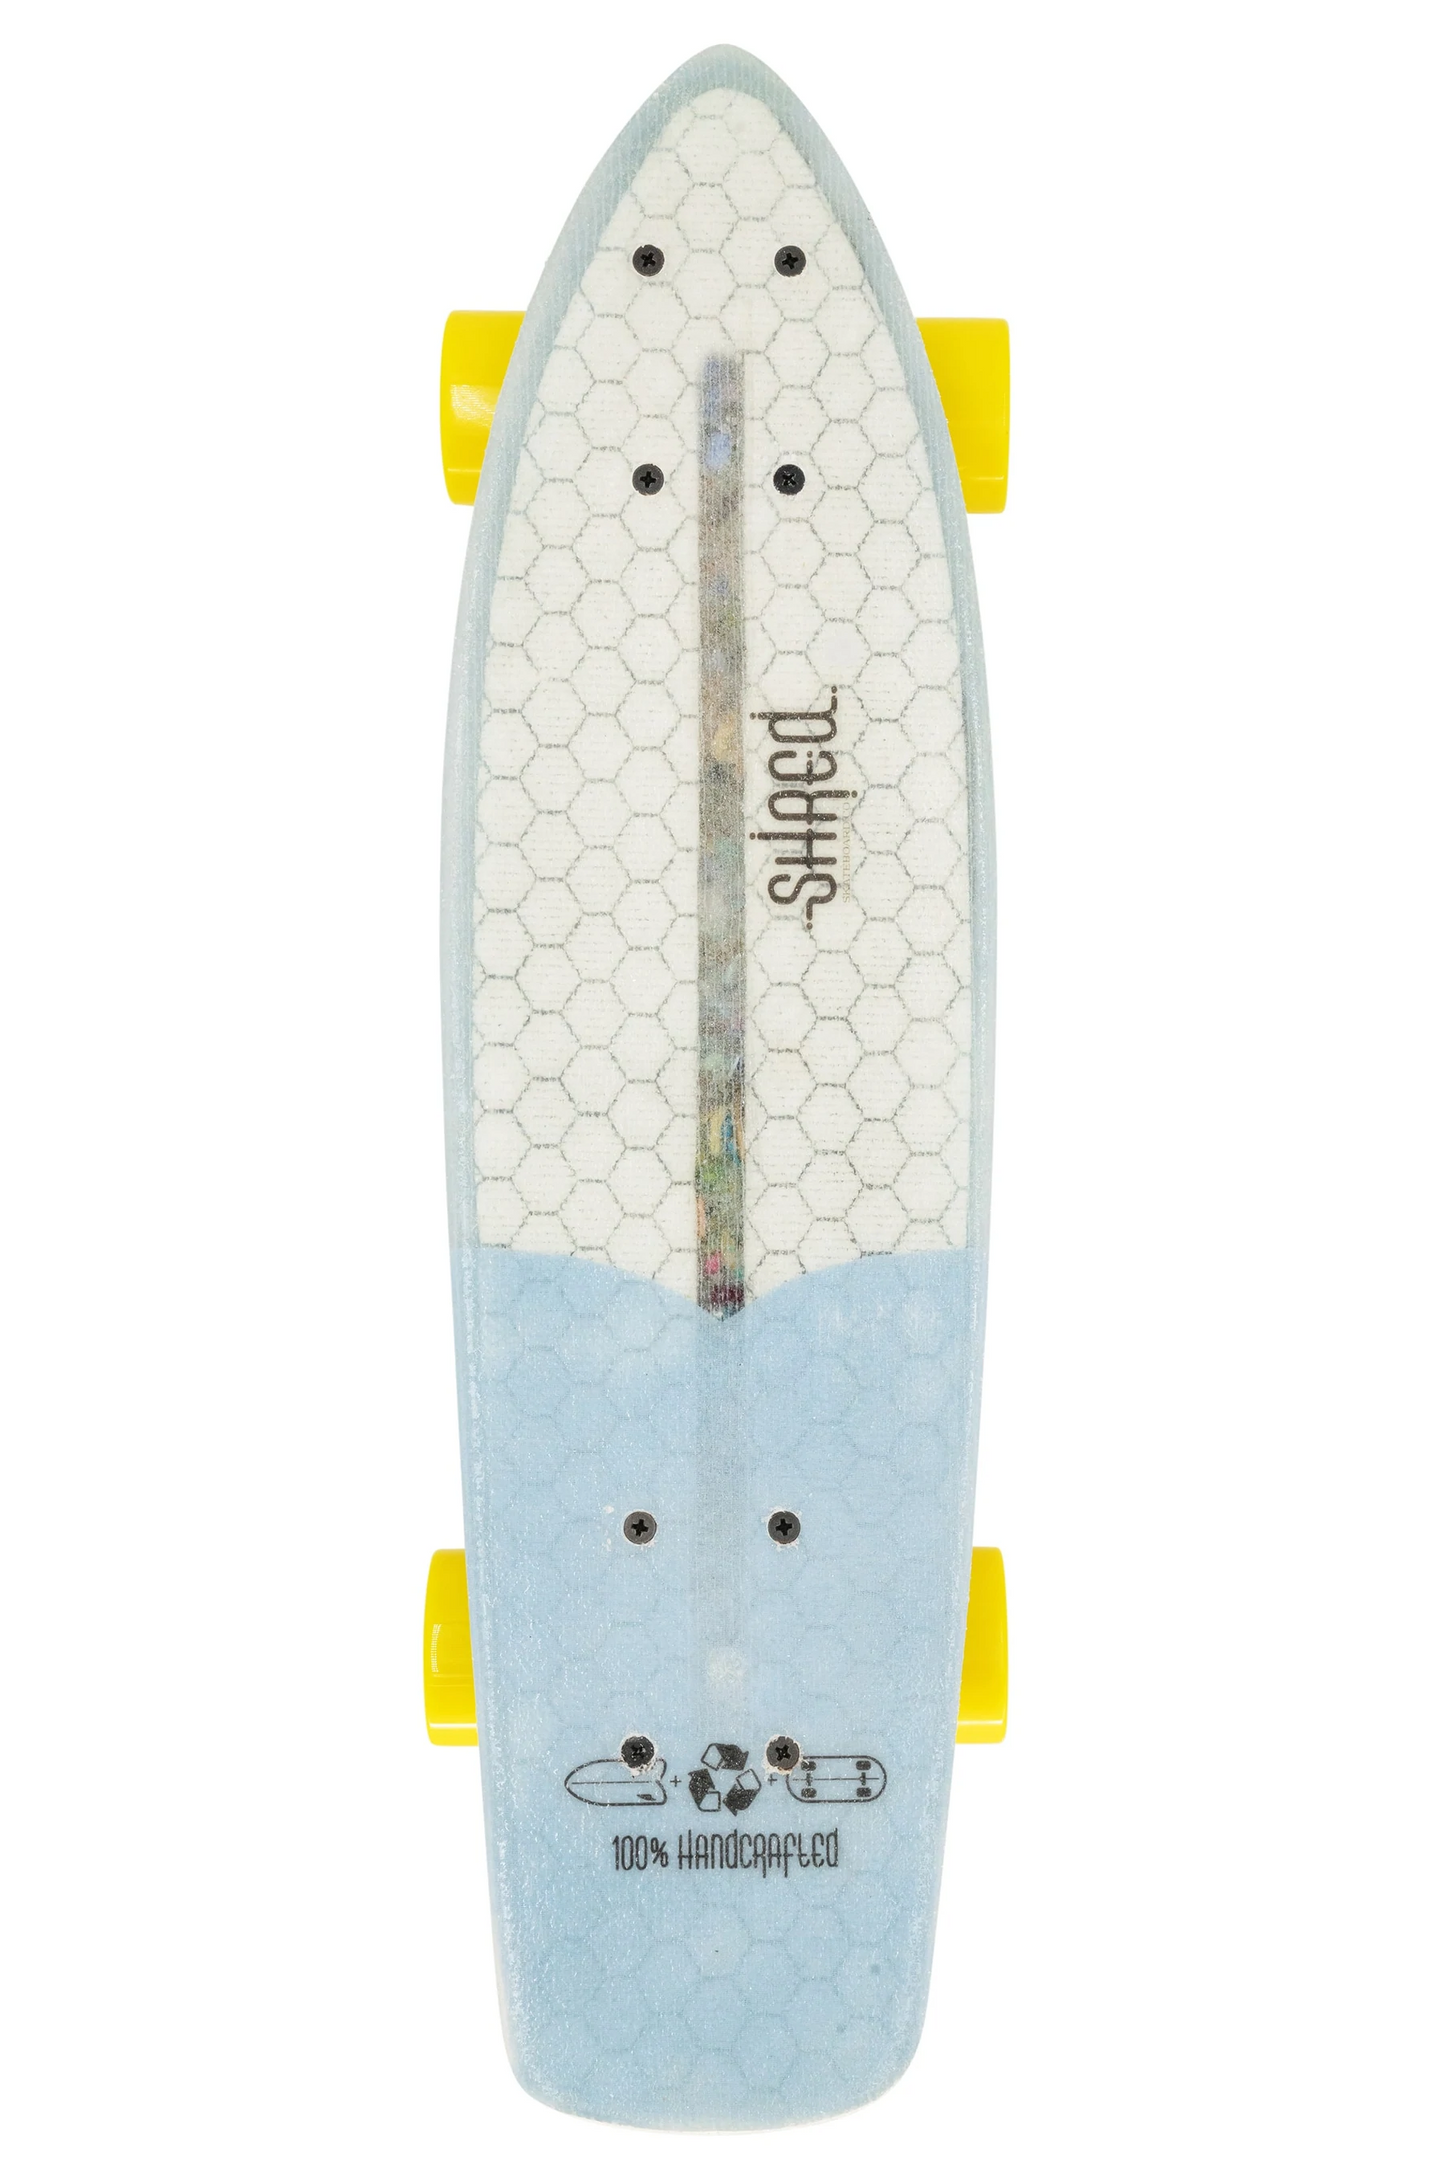 
                  
                    Mini Cruiser - The Sprat (24") - Resin Tint Light Blue by Shred Skateboard Co
                  
                